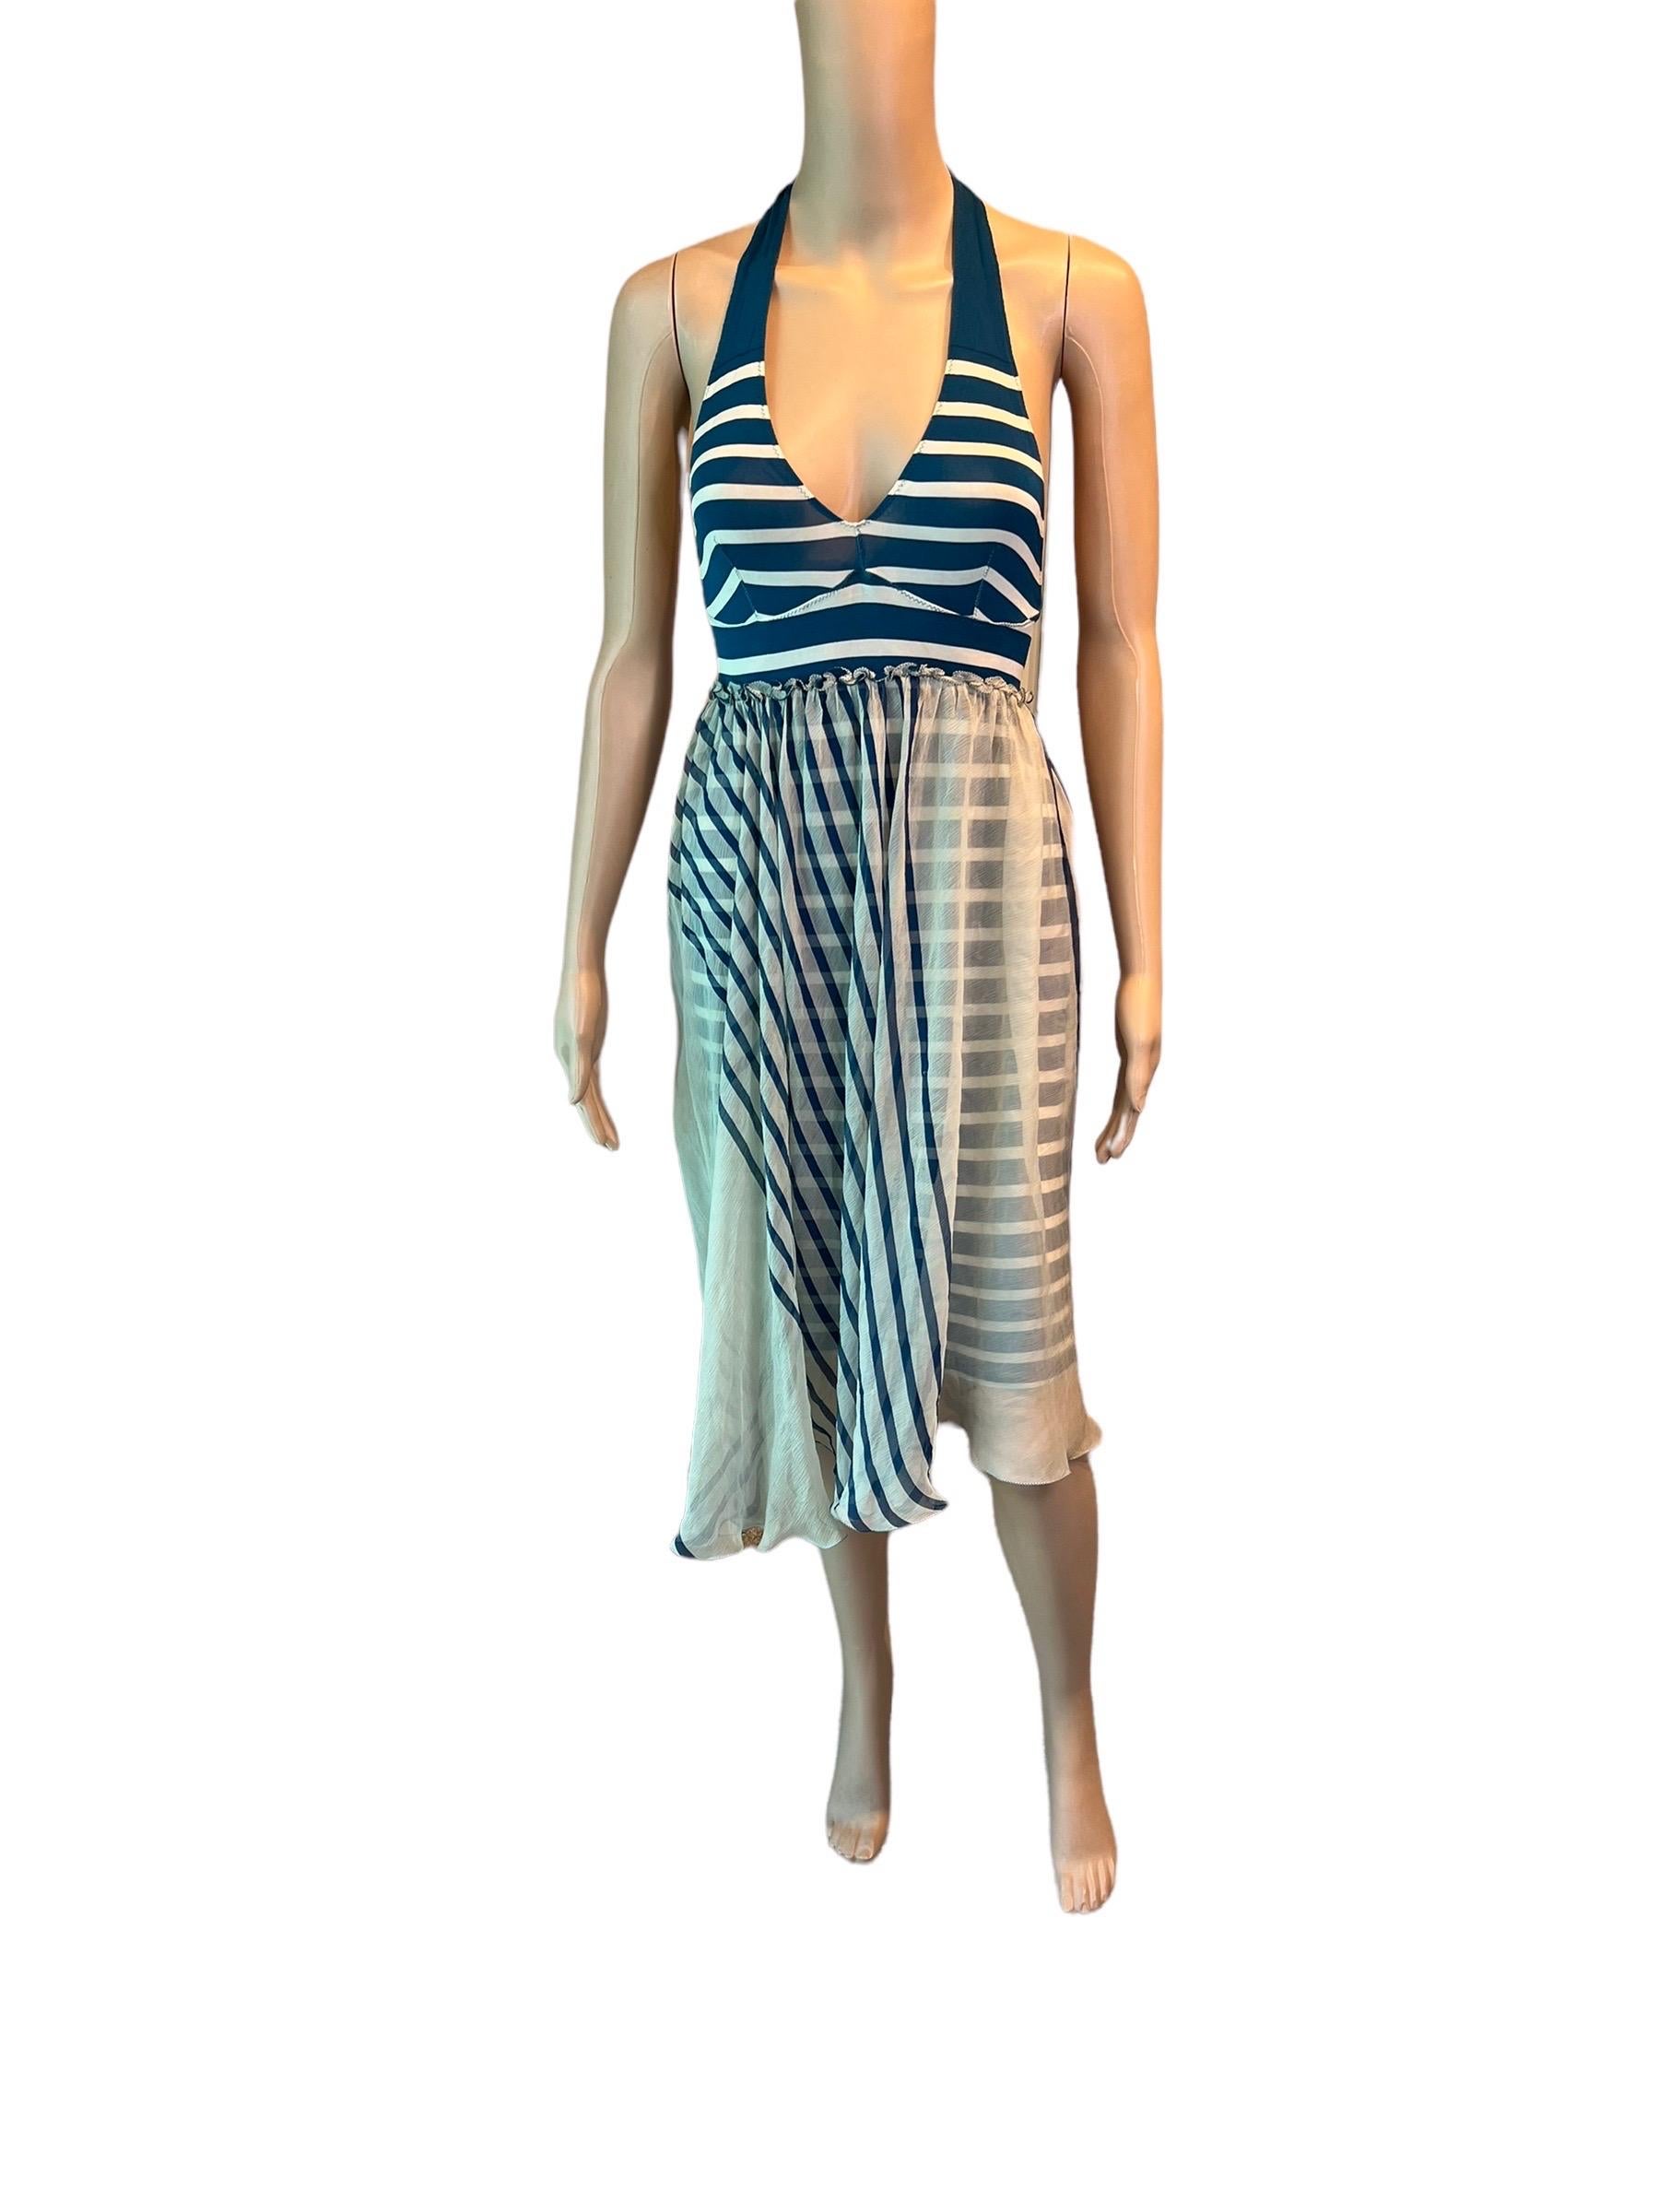 Jean Paul Gaultier Soleil S/S 2001 Gestreiftes Kleid mit Rückenausschnitt in Elfenbein und Marineblau  für Damen oder Herren im Angebot